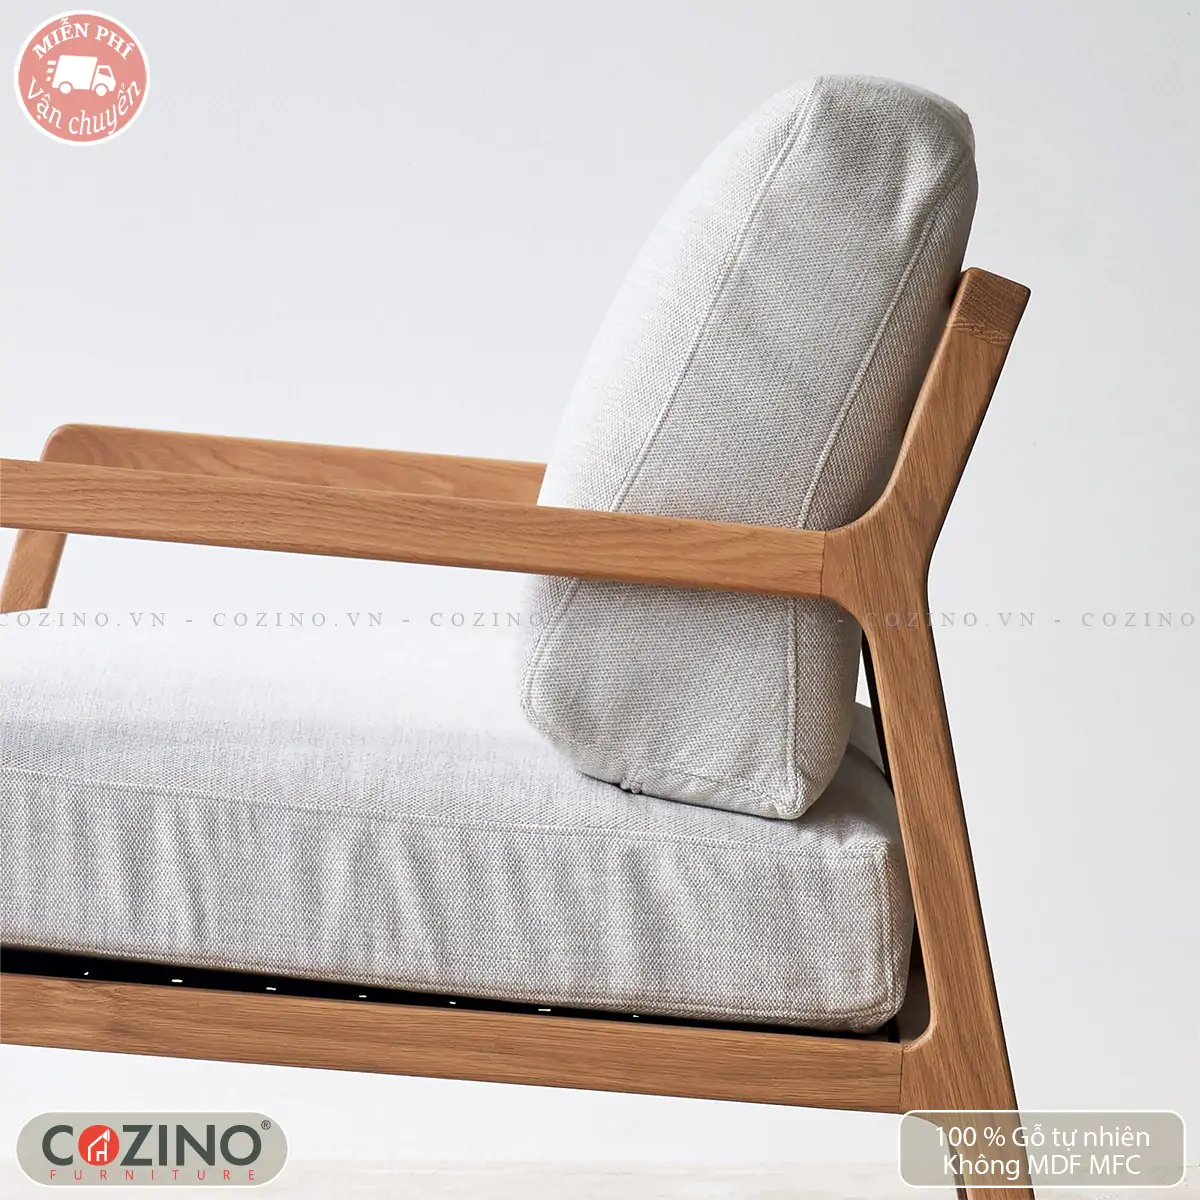 COZINOGhế sofa Rattan gỗ sồi đẹp, chất lượng, giá rẻ